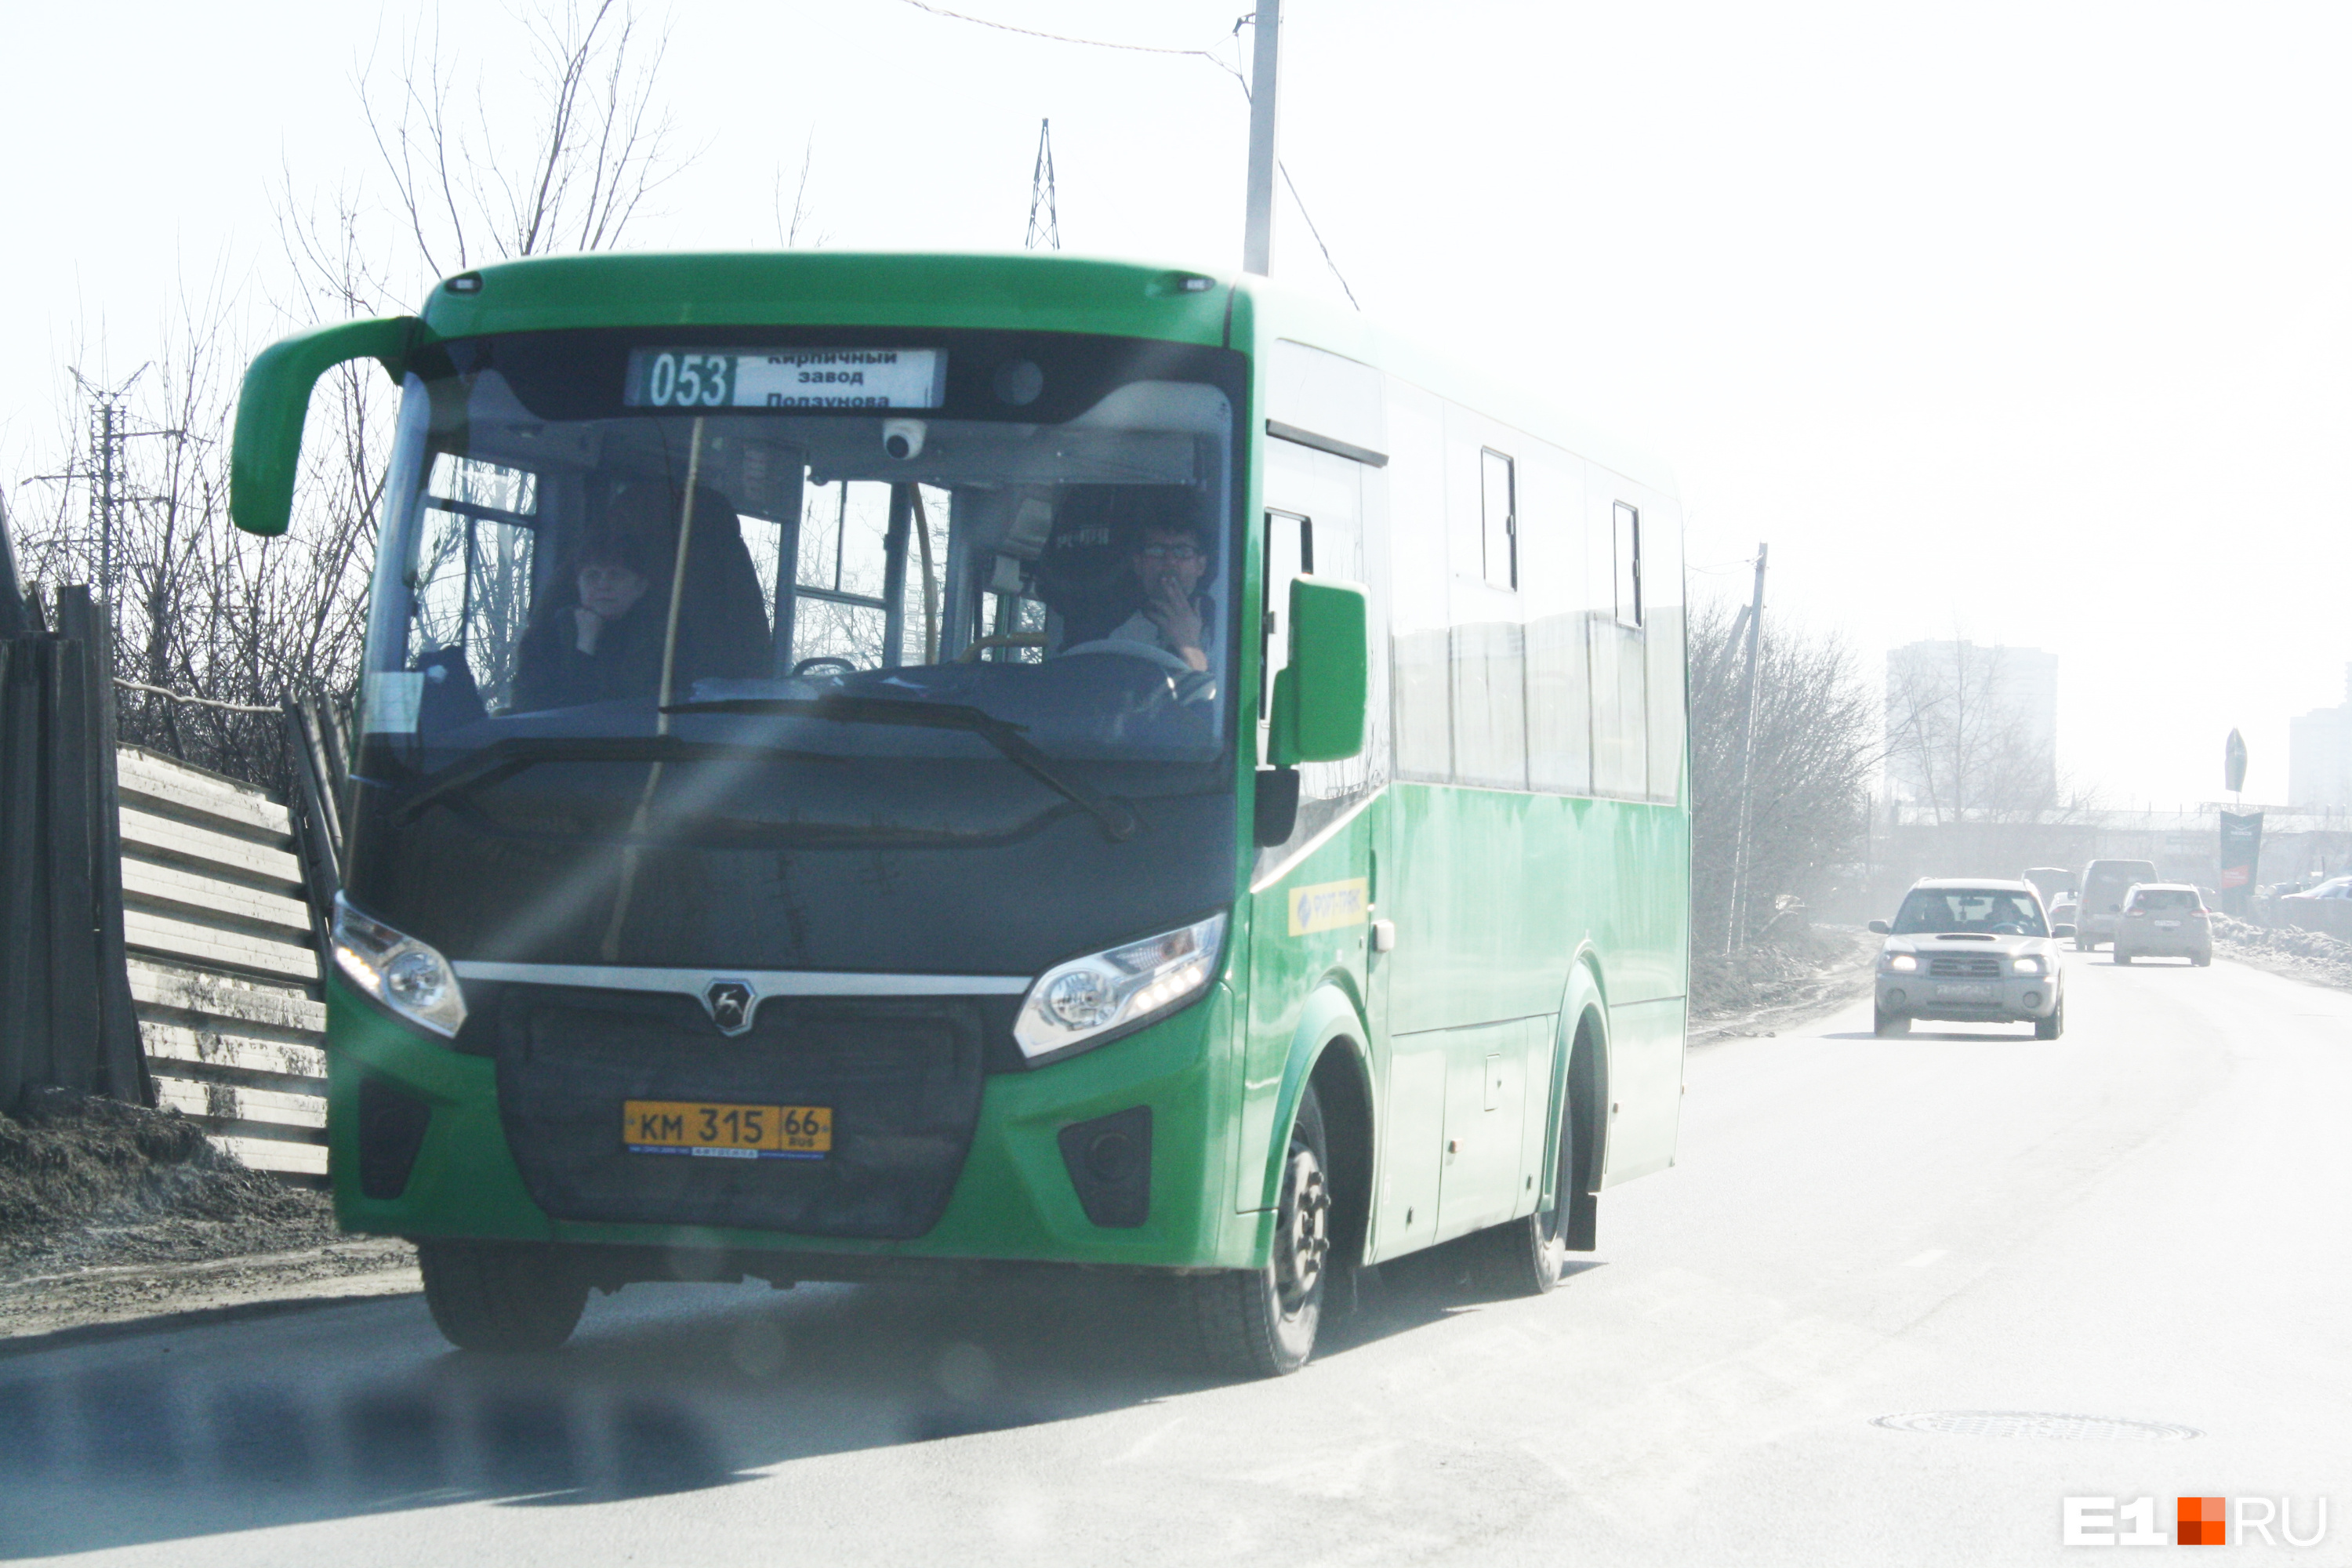 Парадокс: в Екатеринбурге перевозчику влепили штраф за то, что у него работает много автобусов